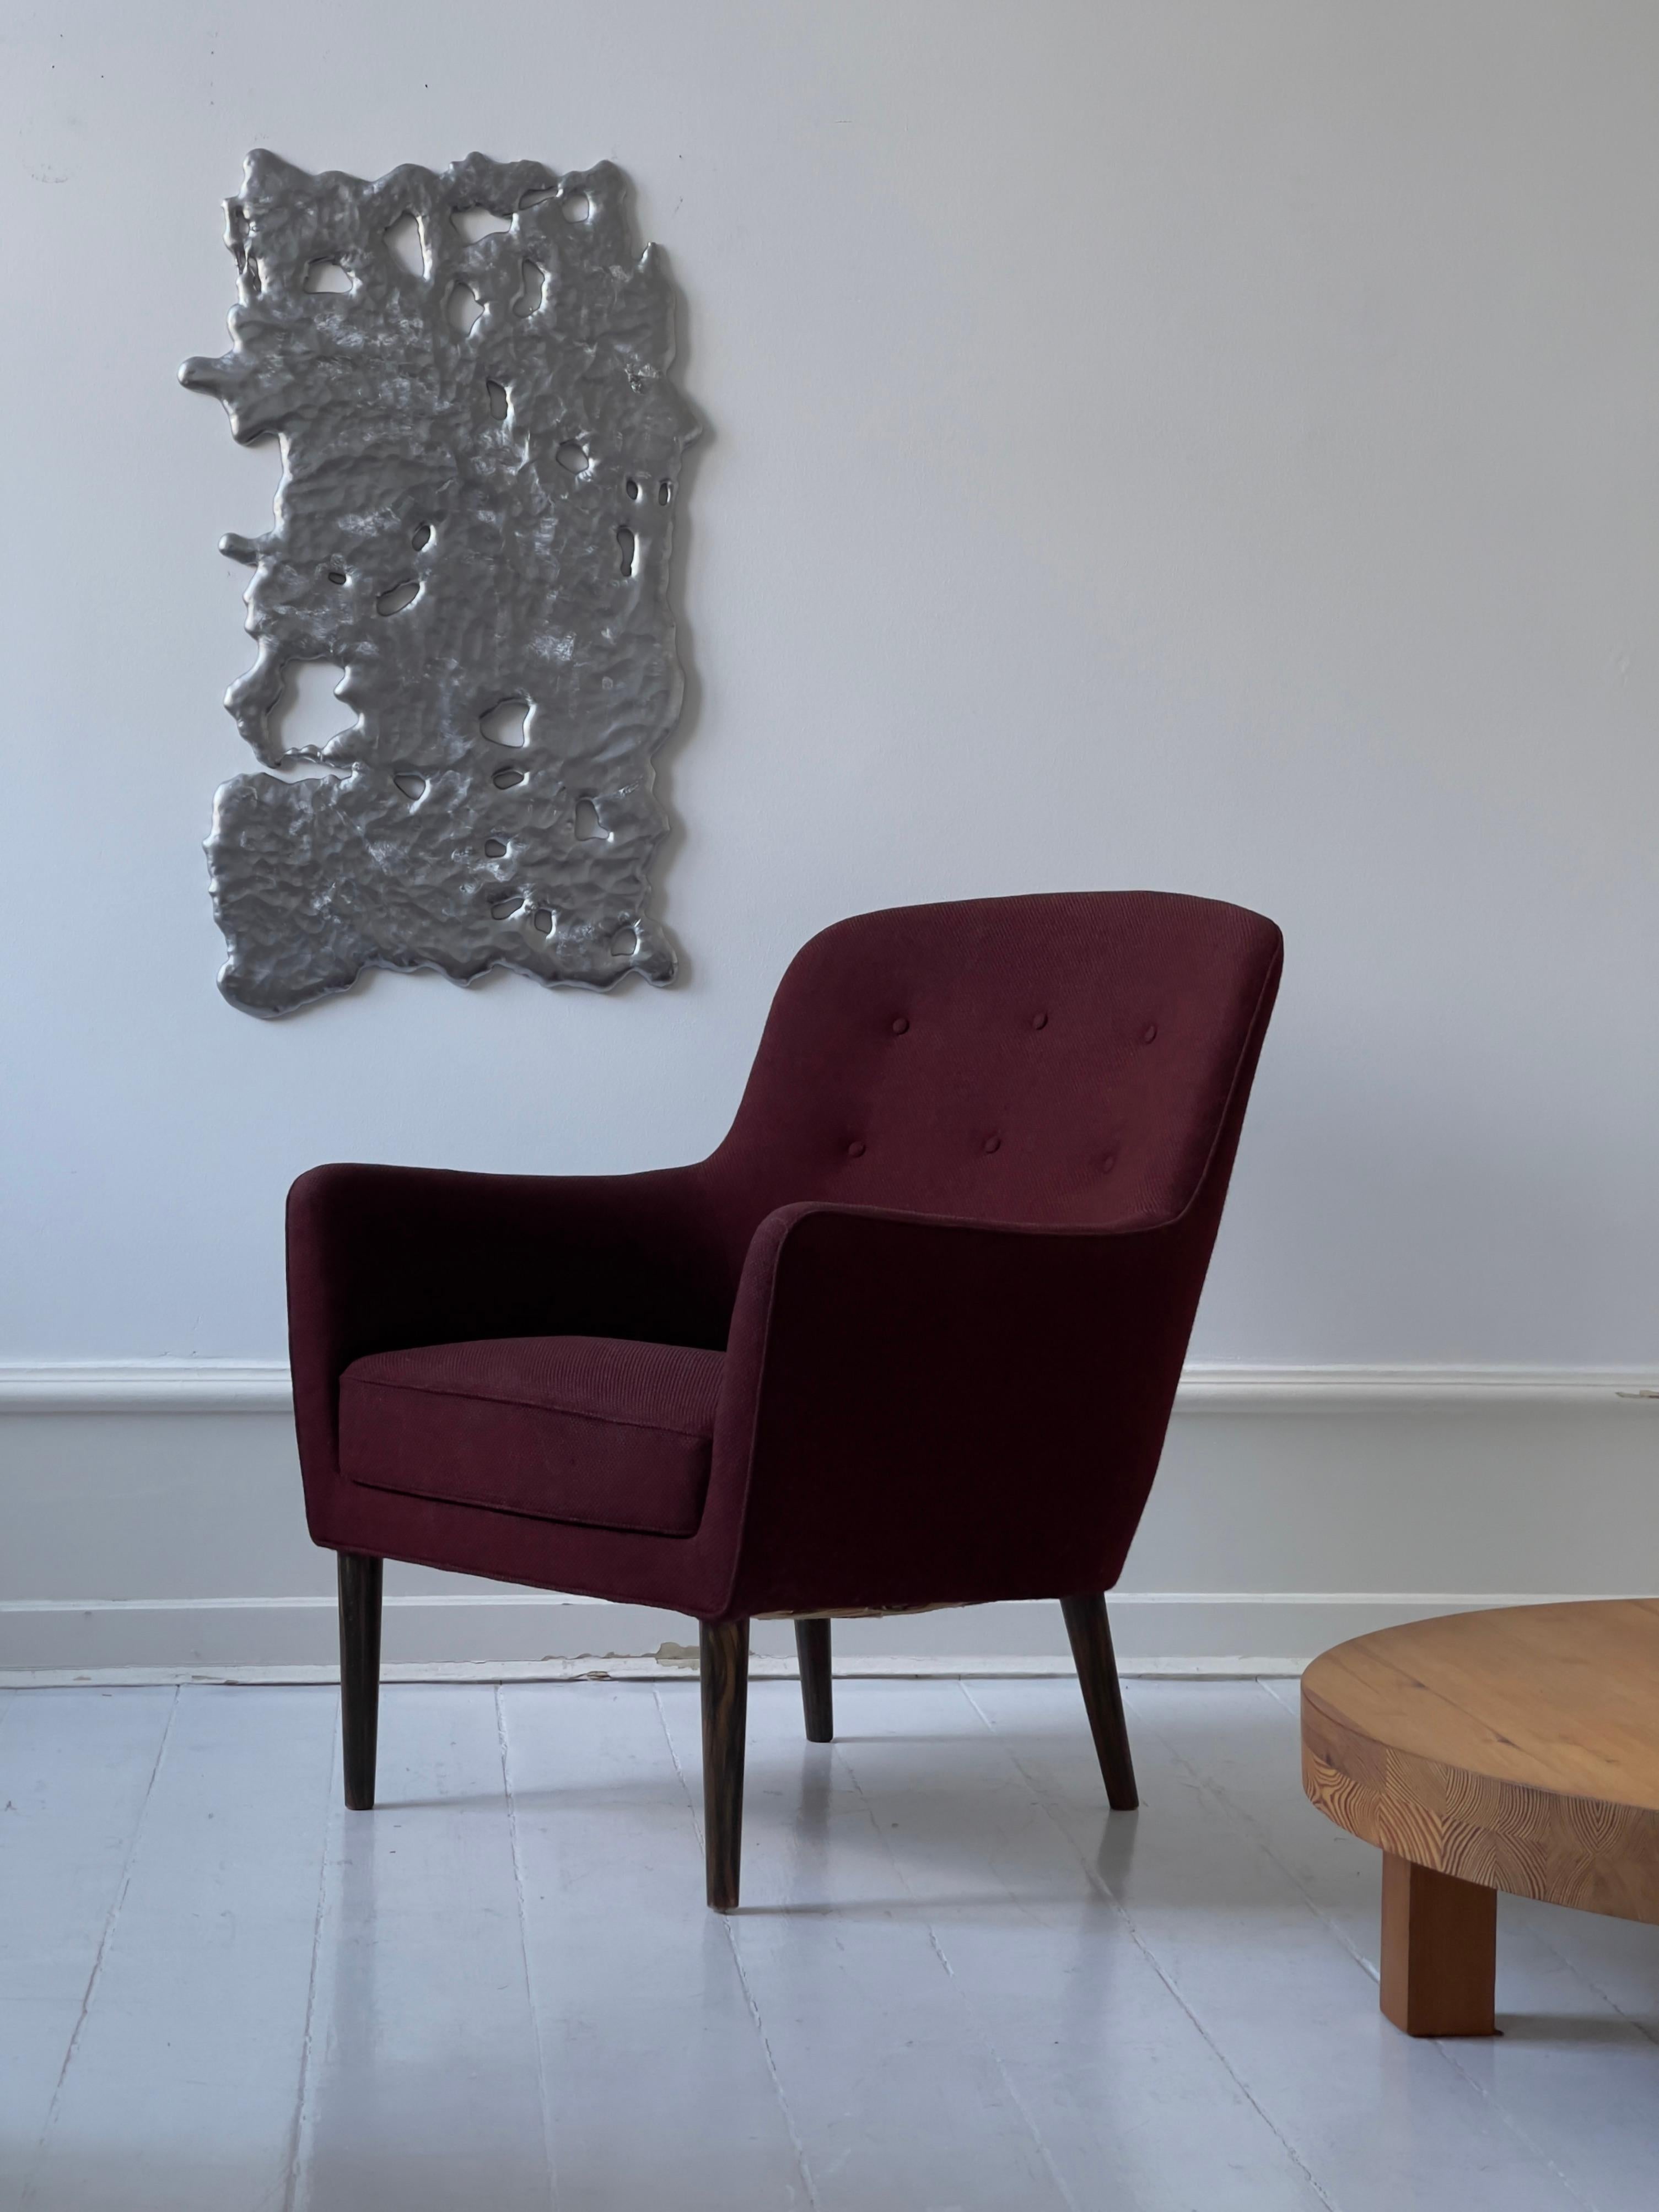  Fauteuil danois des années 1950 rouge et  en laine noire, avec six boutons dans le dos. Pieds en bois effilés. Ce fauteuil a été conçu et fabriqué au Danemark vers 1952 par le maître ébéniste danois Jacob Kjaer. La chaise a été entièrement